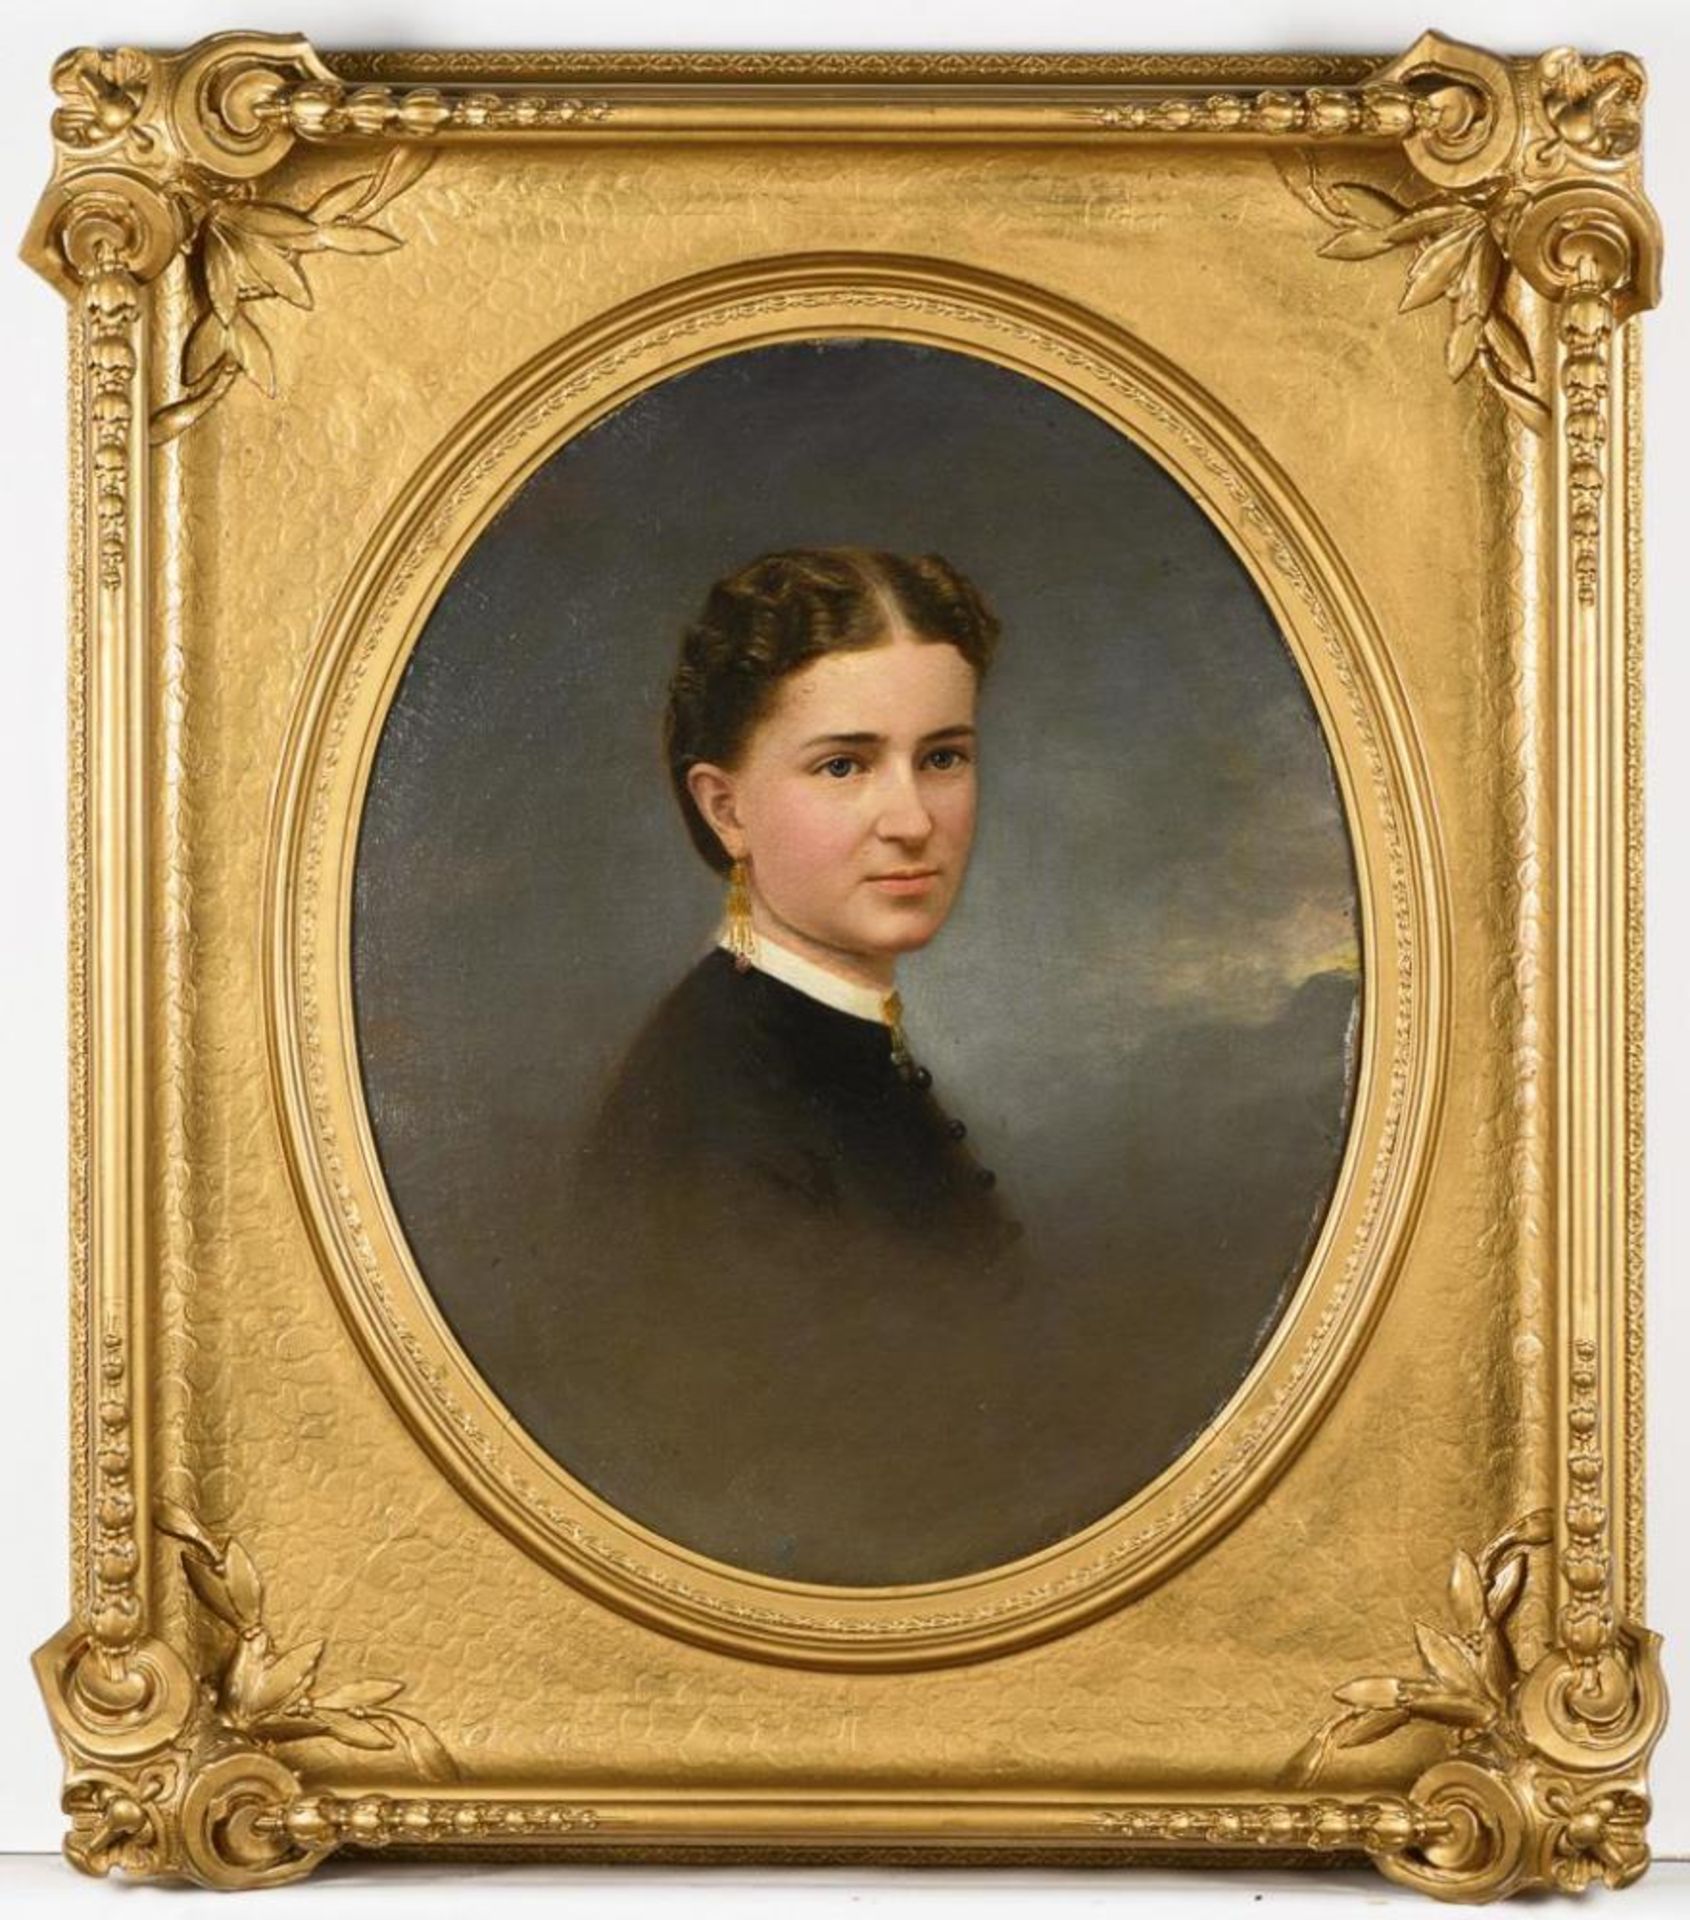 Ovales Bildnis einer jungen Damen im Prunkrahmen.